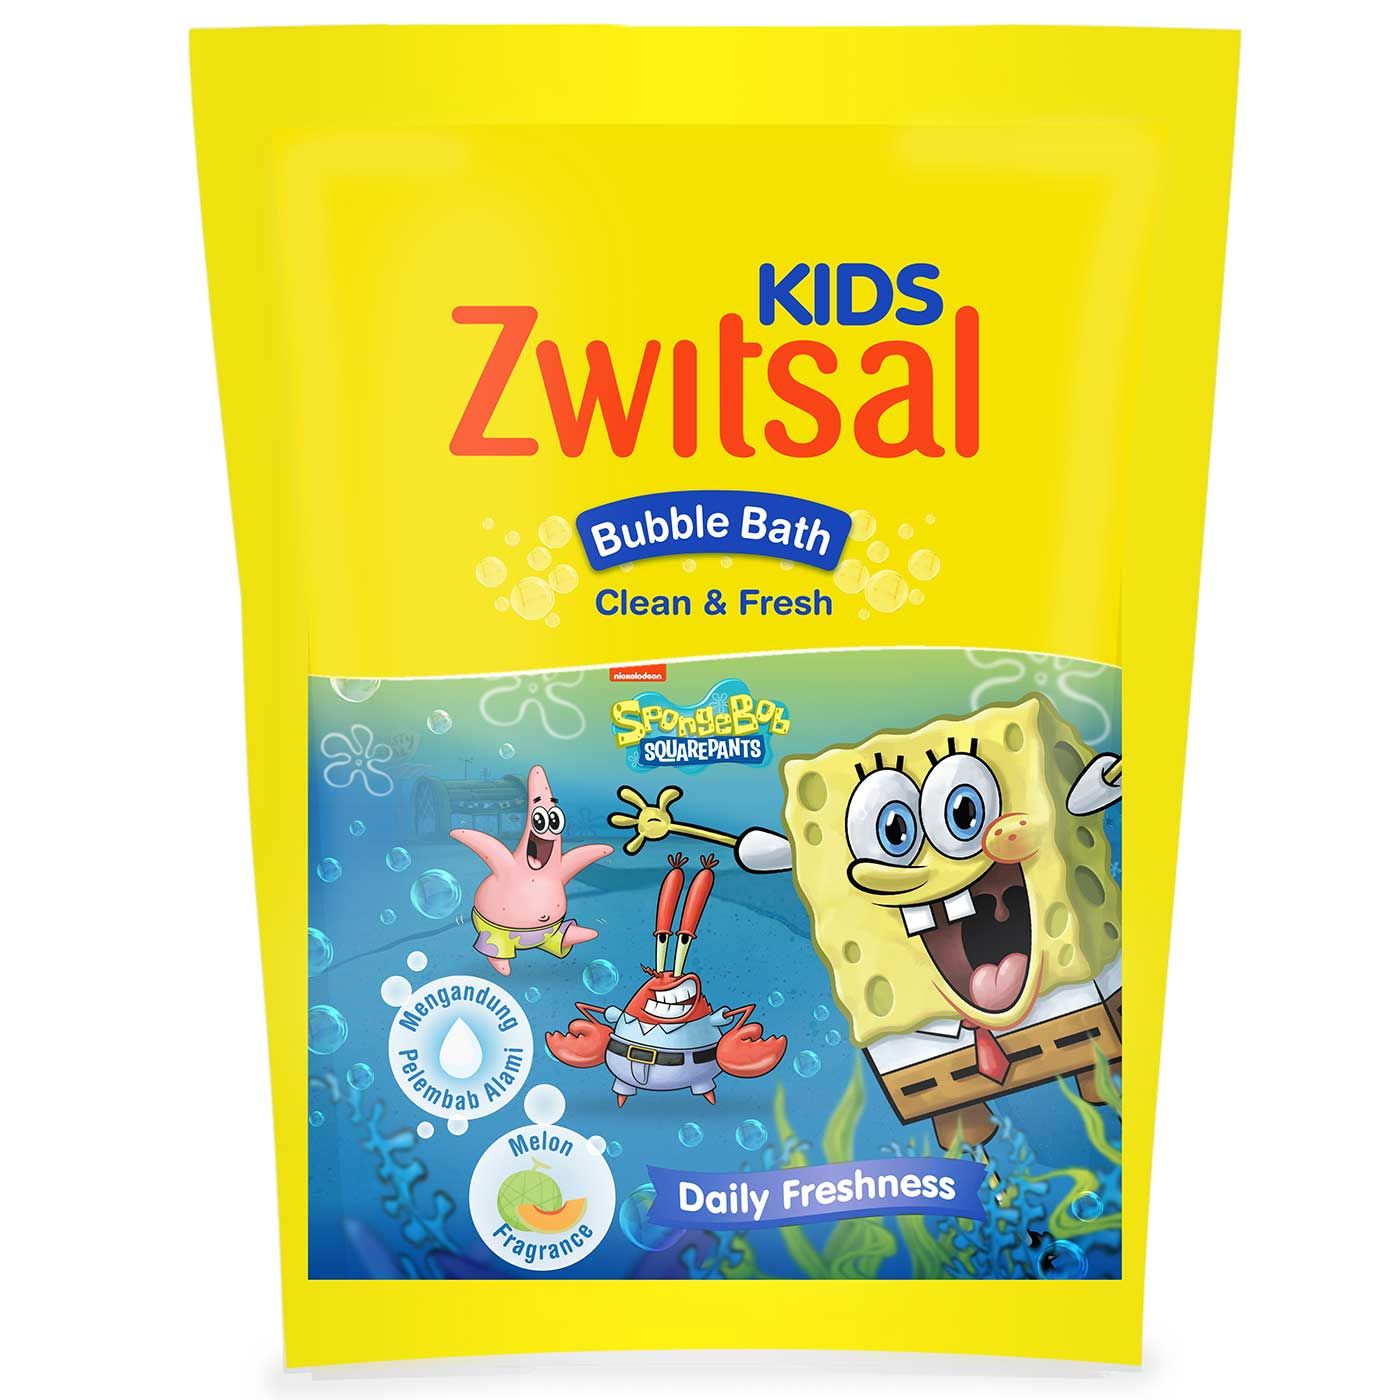 Zwitsal Kids Bubble Bath Blue Clean & Fresh 250ml - 3